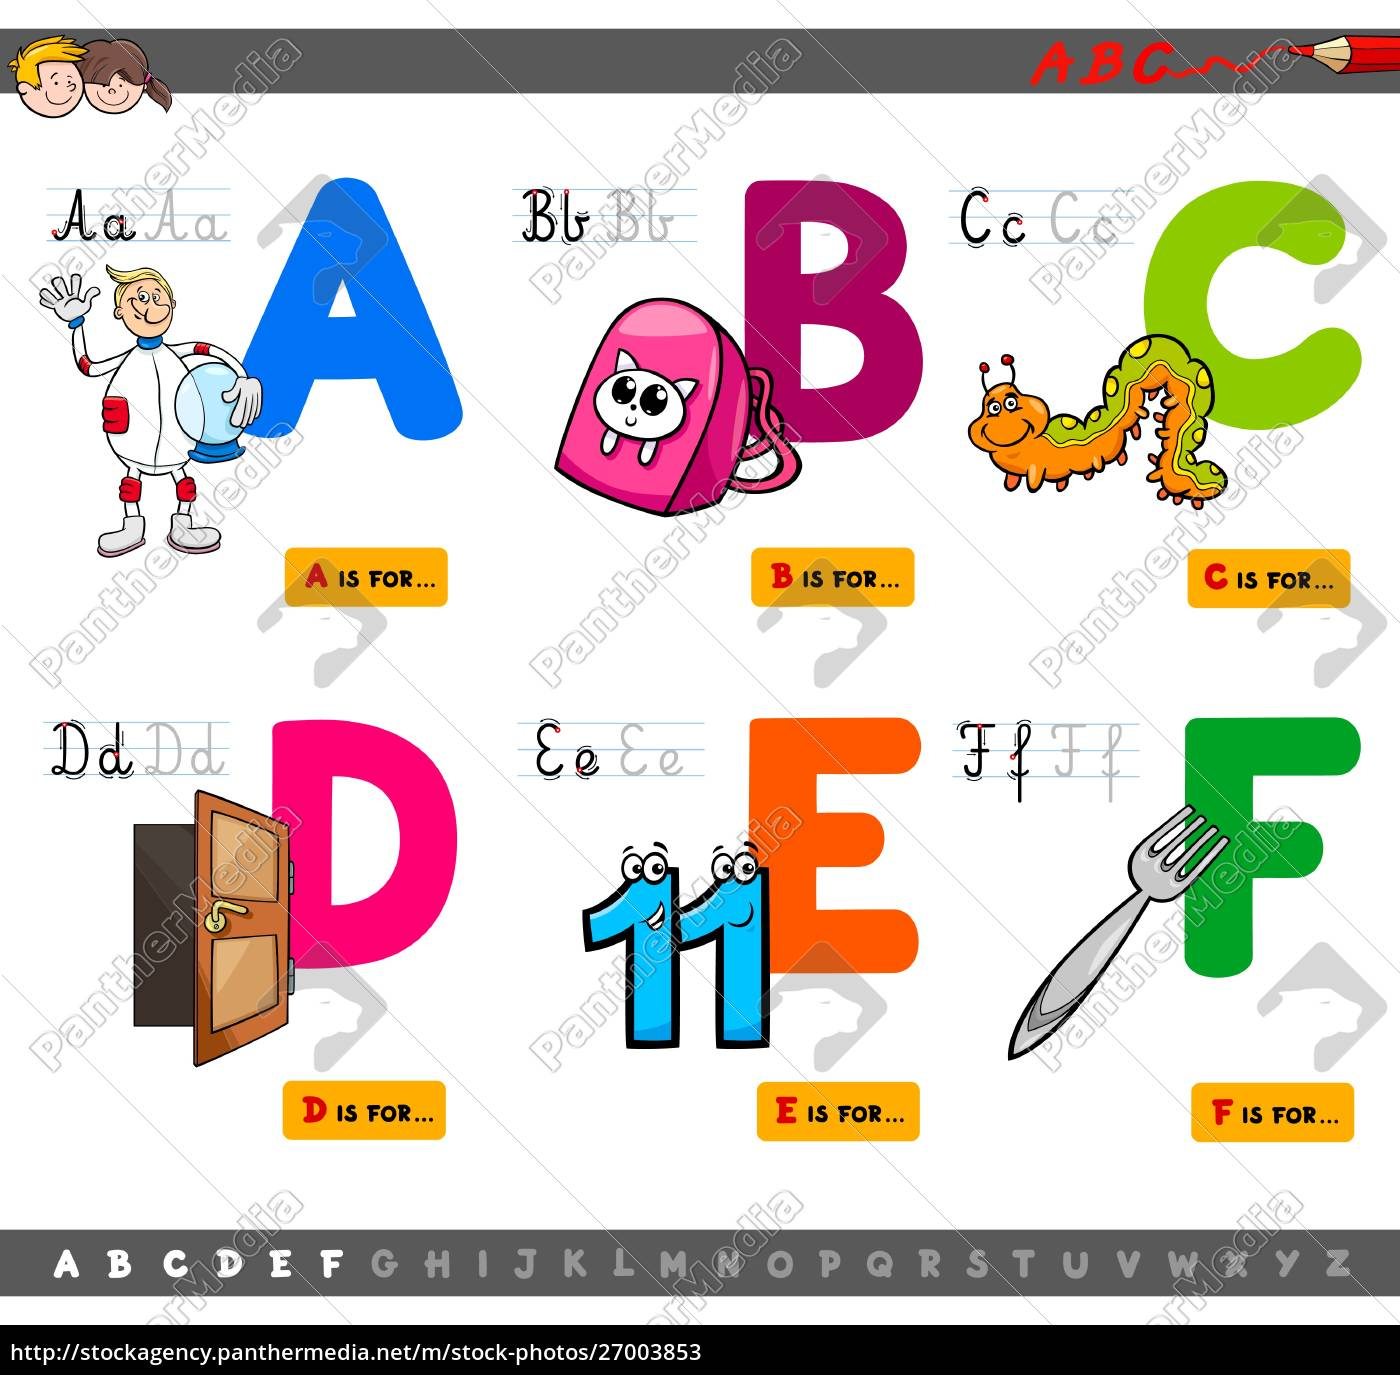 Alphabet Mit Bildern - kinderbilder.download | kinderbilder.download